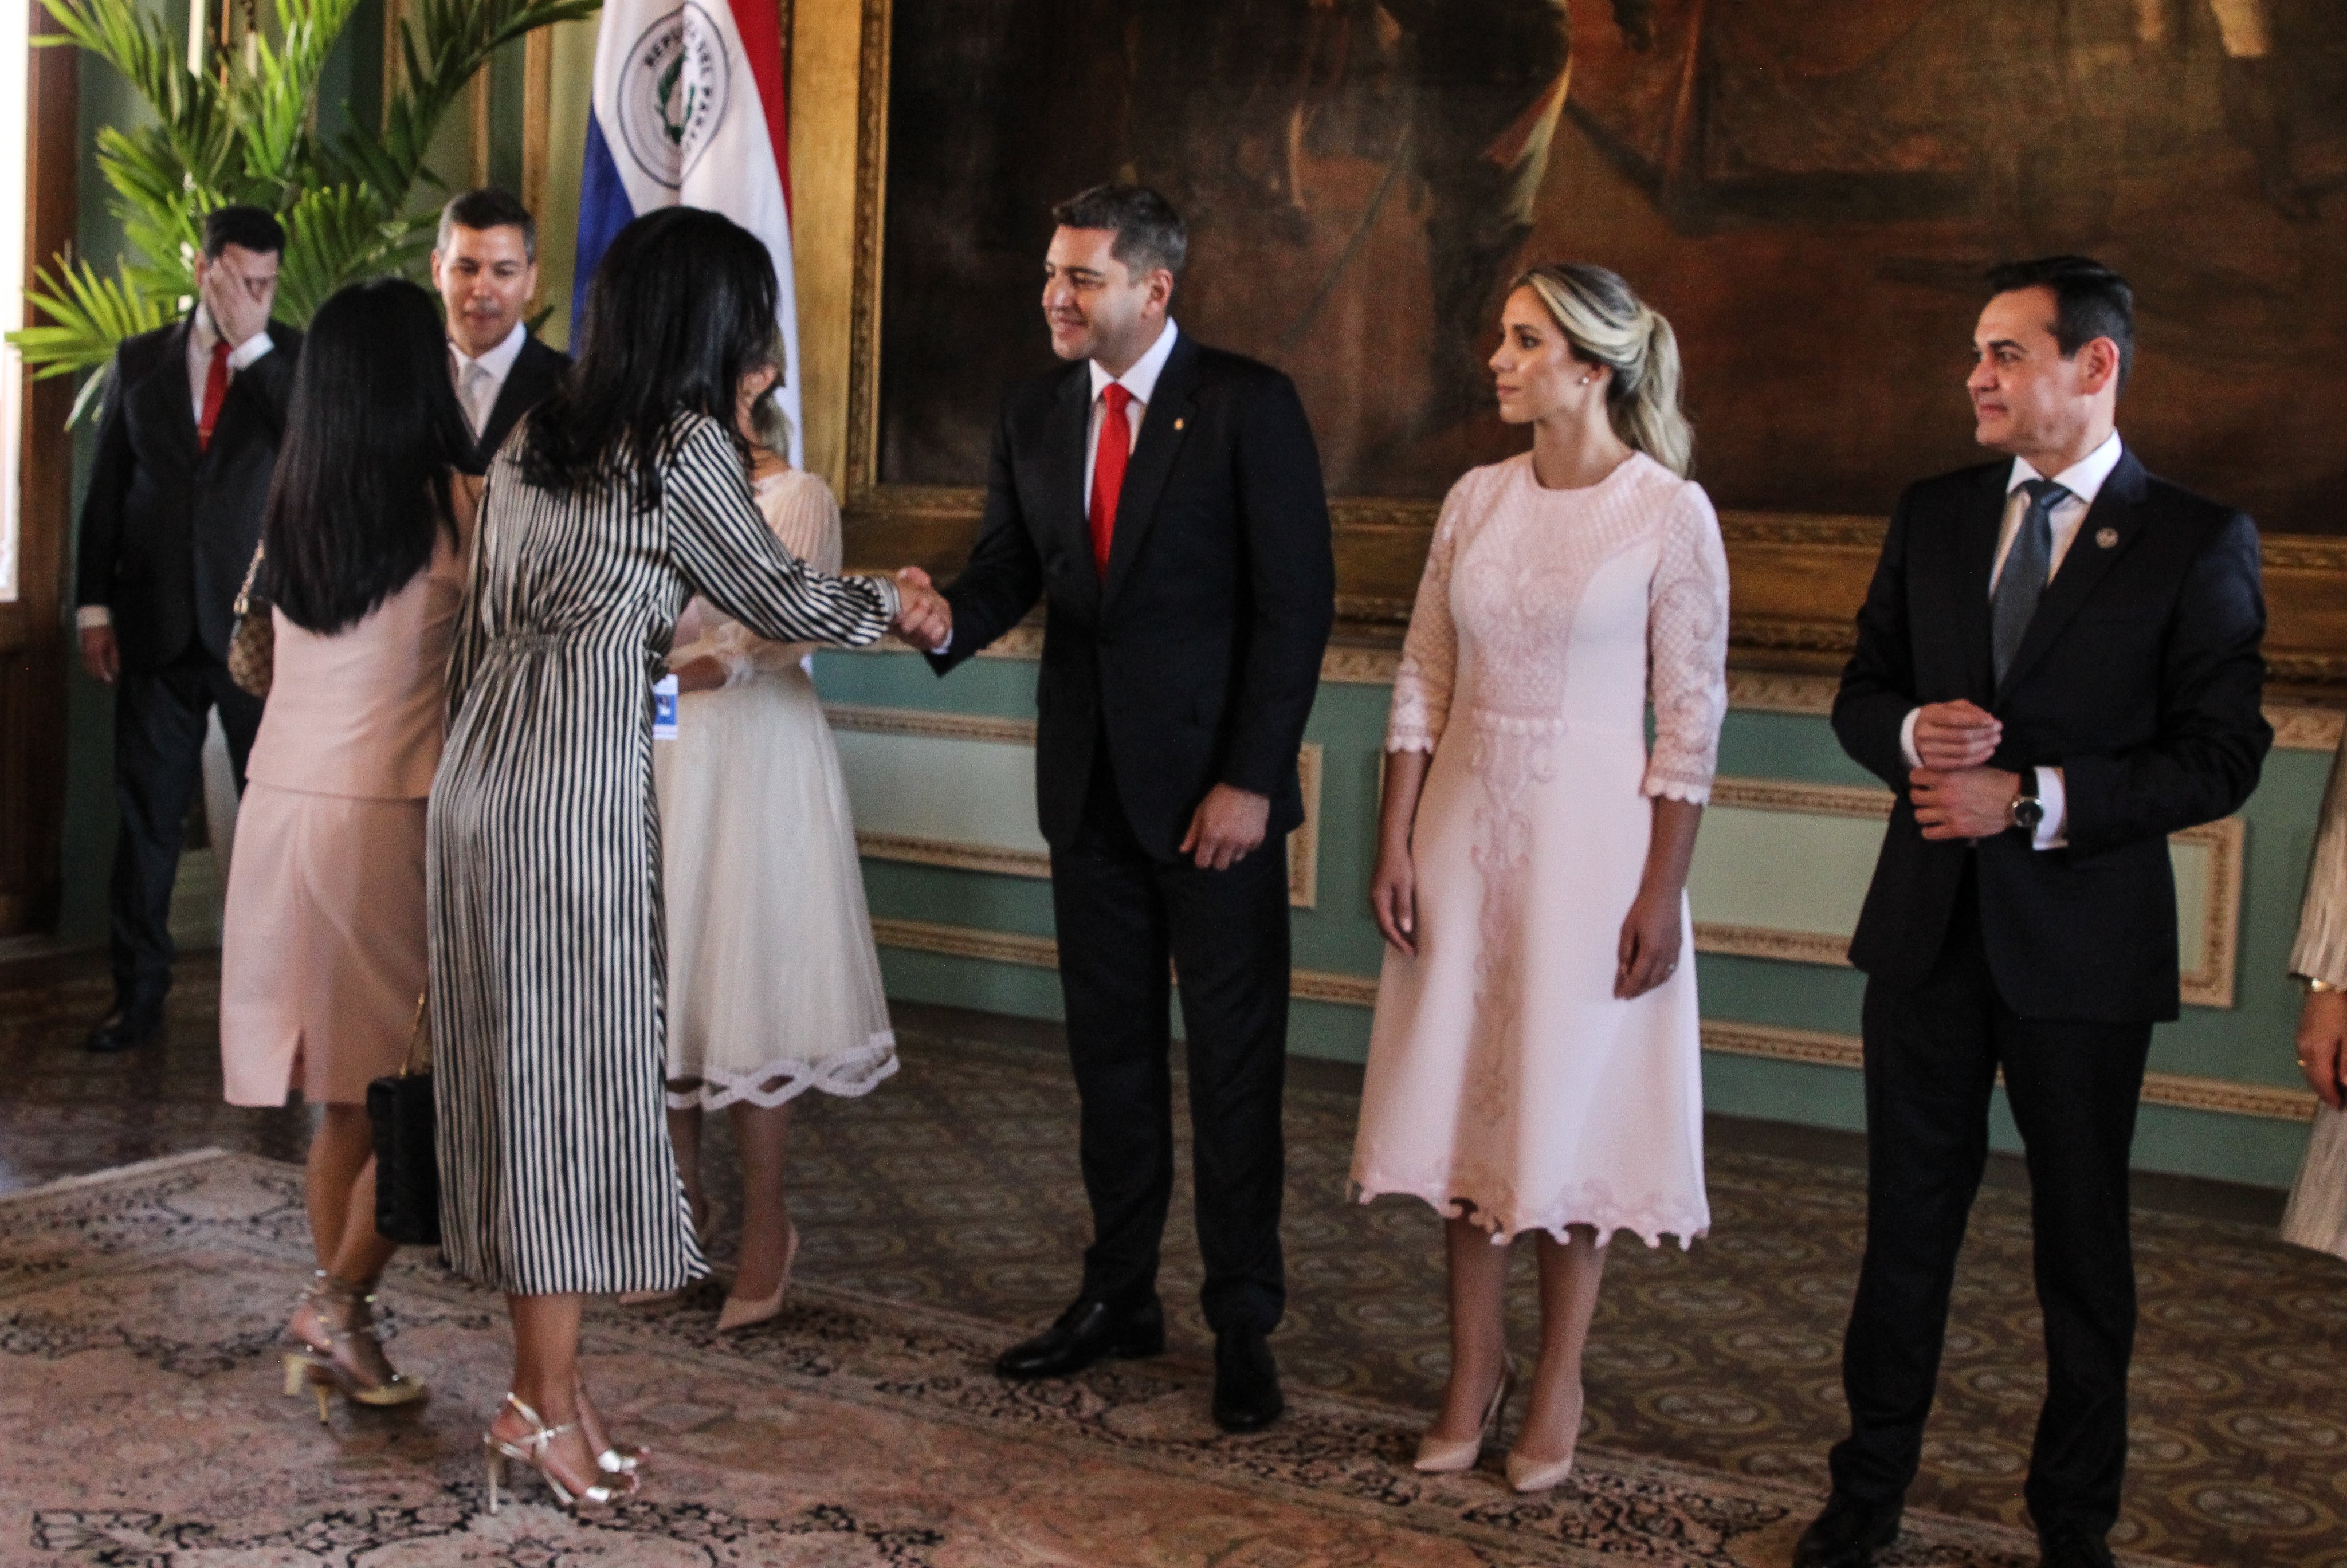 Michel Muschett y Silvia Morimoto saludando al presidente y al vicepresidente de Paraguay.